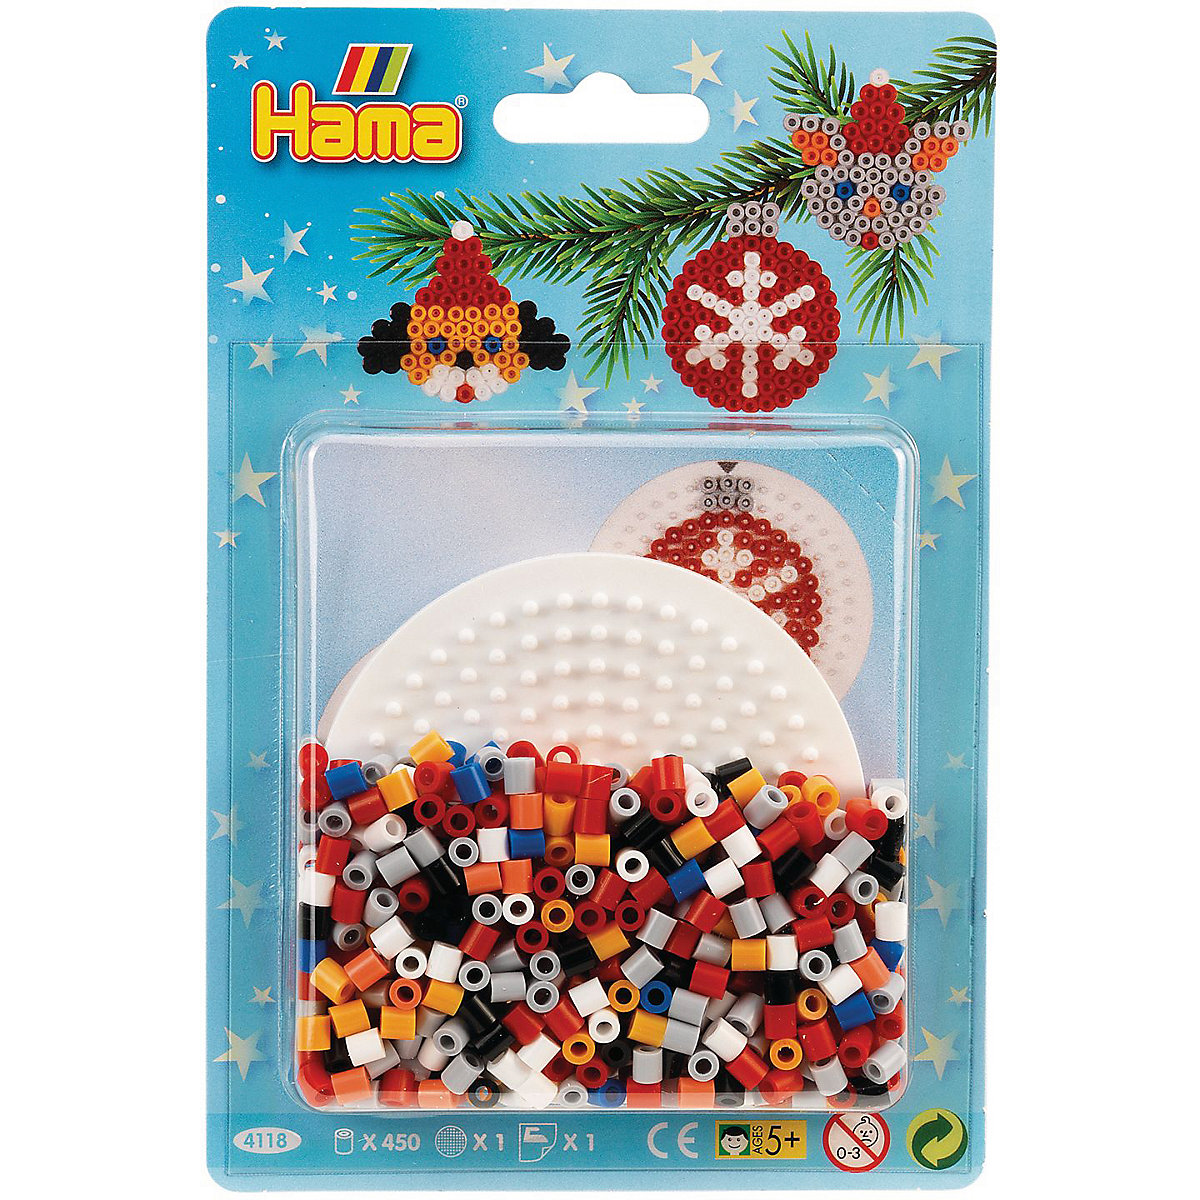 Hama Perlen HAMA 4118 Blister Weihnachten Kreis 450 midi-Perlen & Zubehör